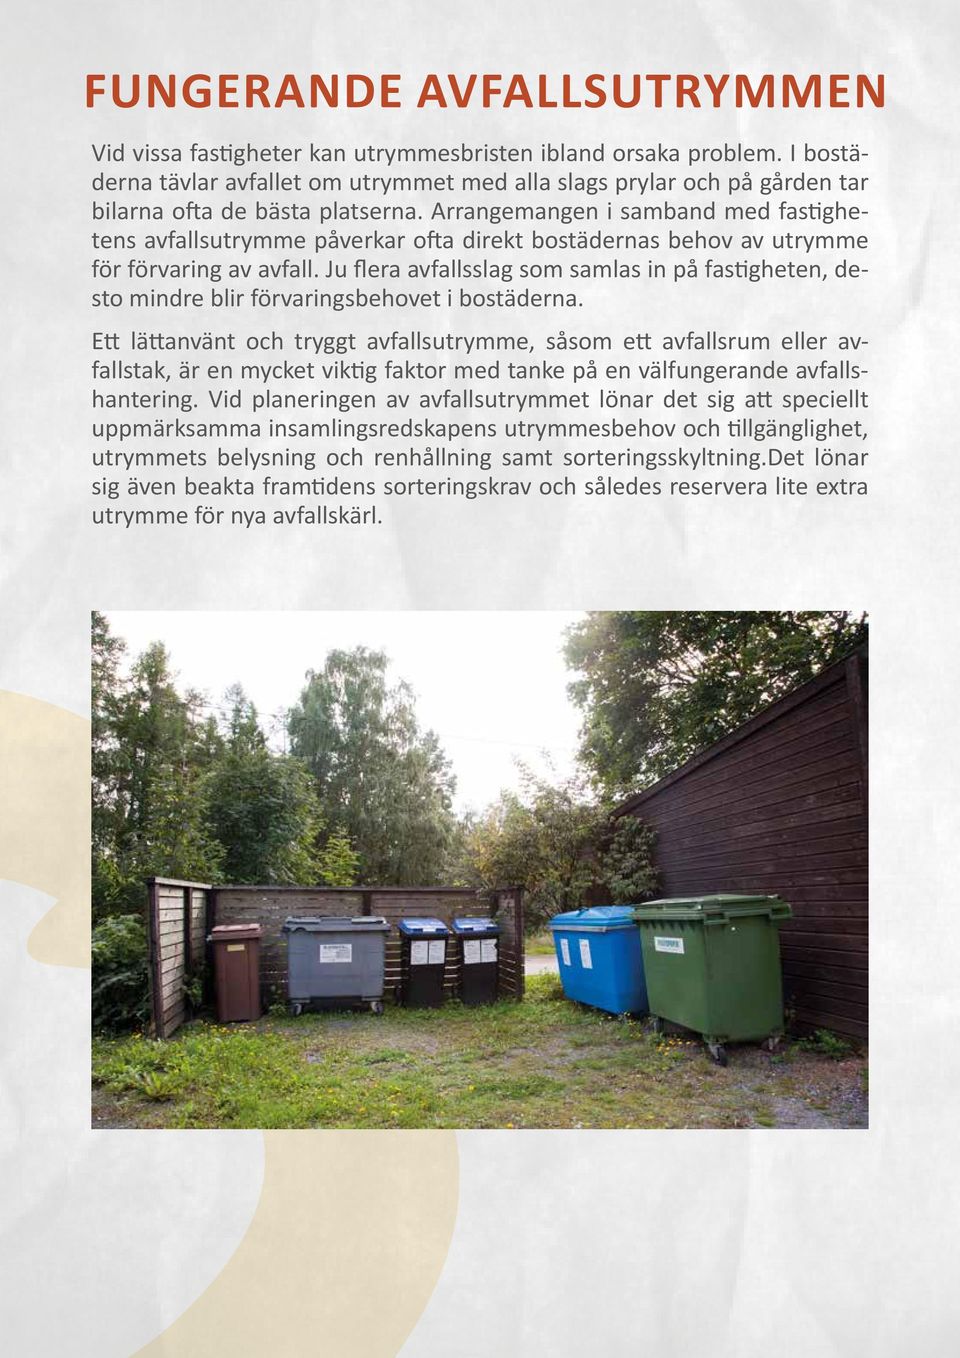 Arrangemangen i samband med fastighetens avfallsutrymme påverkar ofta direkt bostädernas behov av utrymme för förvaring av avfall.